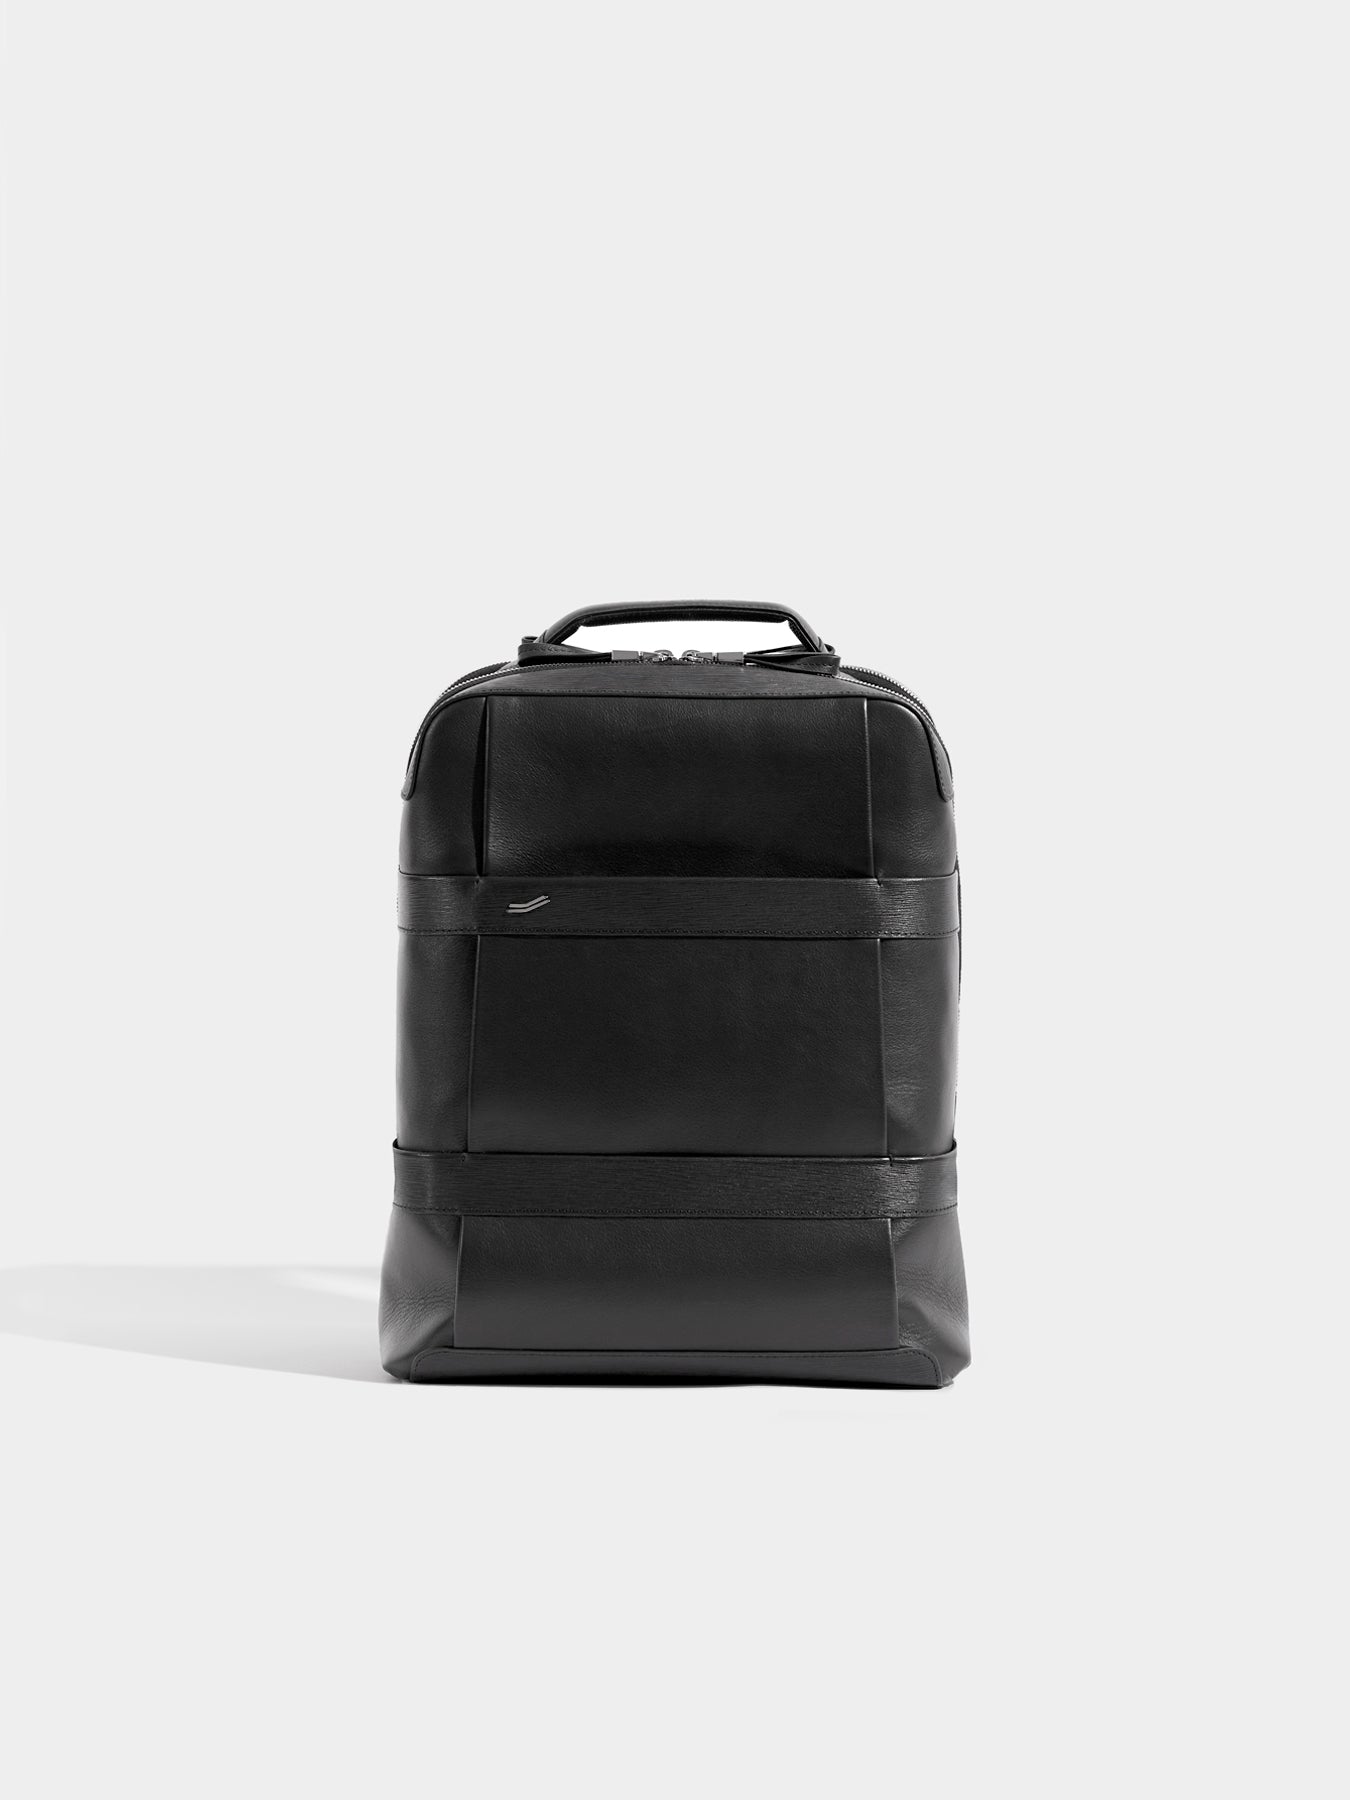 New Genicci Men's Falcon Cognac Leather Convertible Briefcase